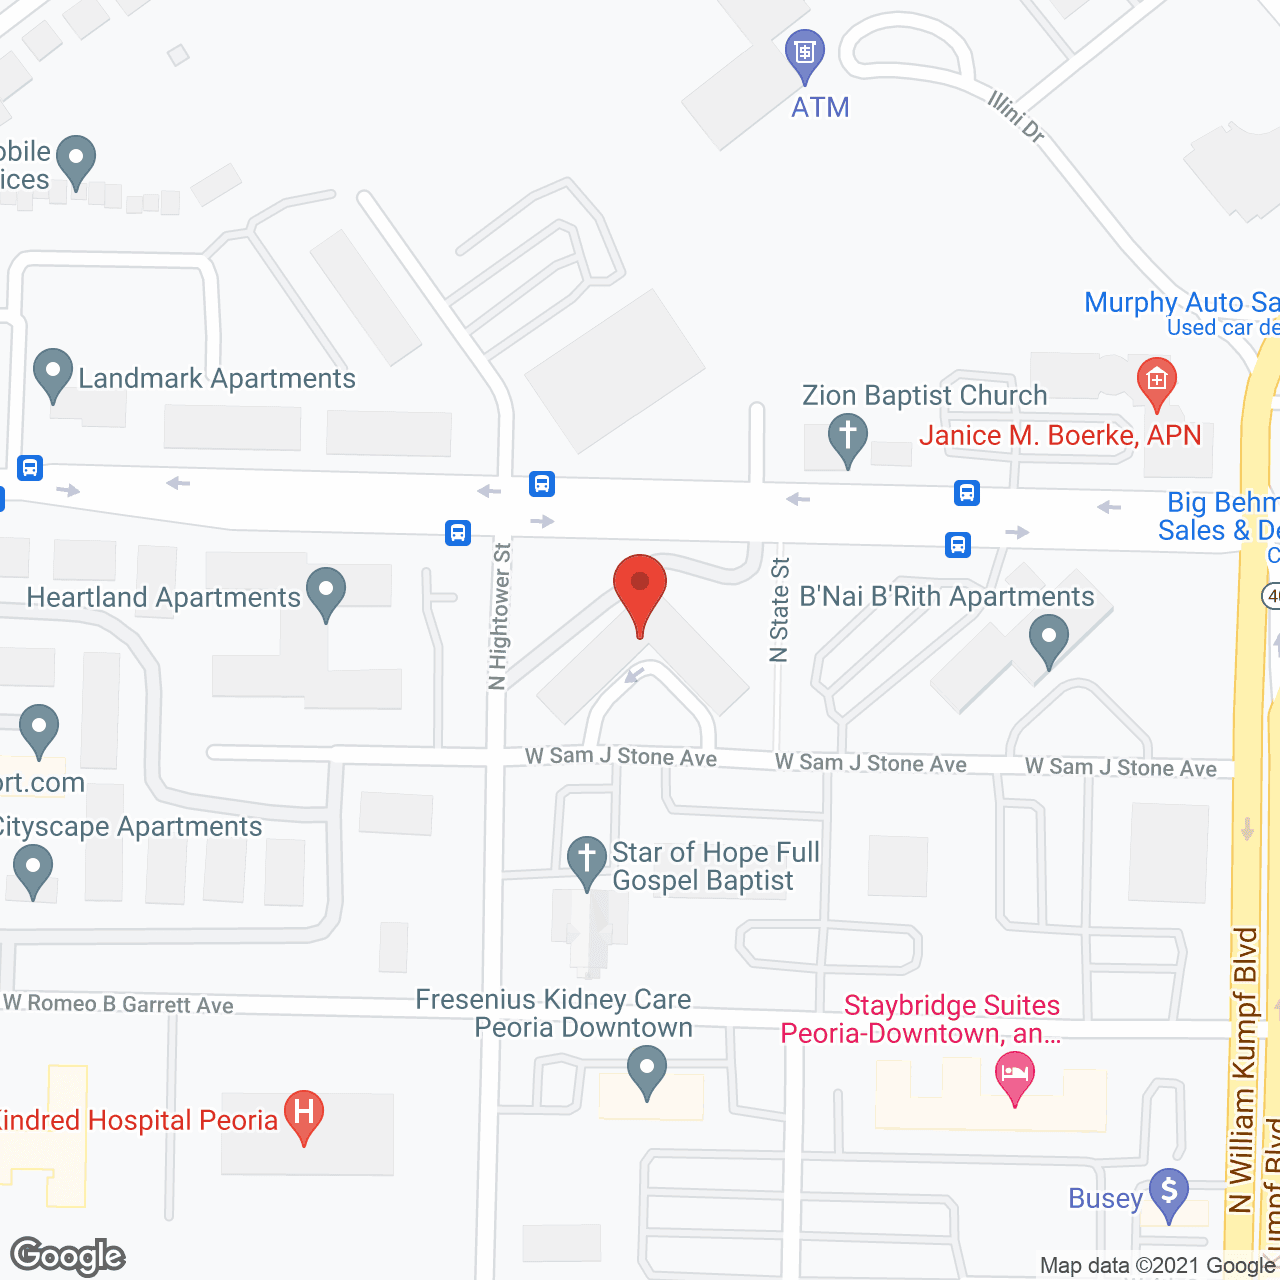 B'Nai B'Rith Apartments in google map